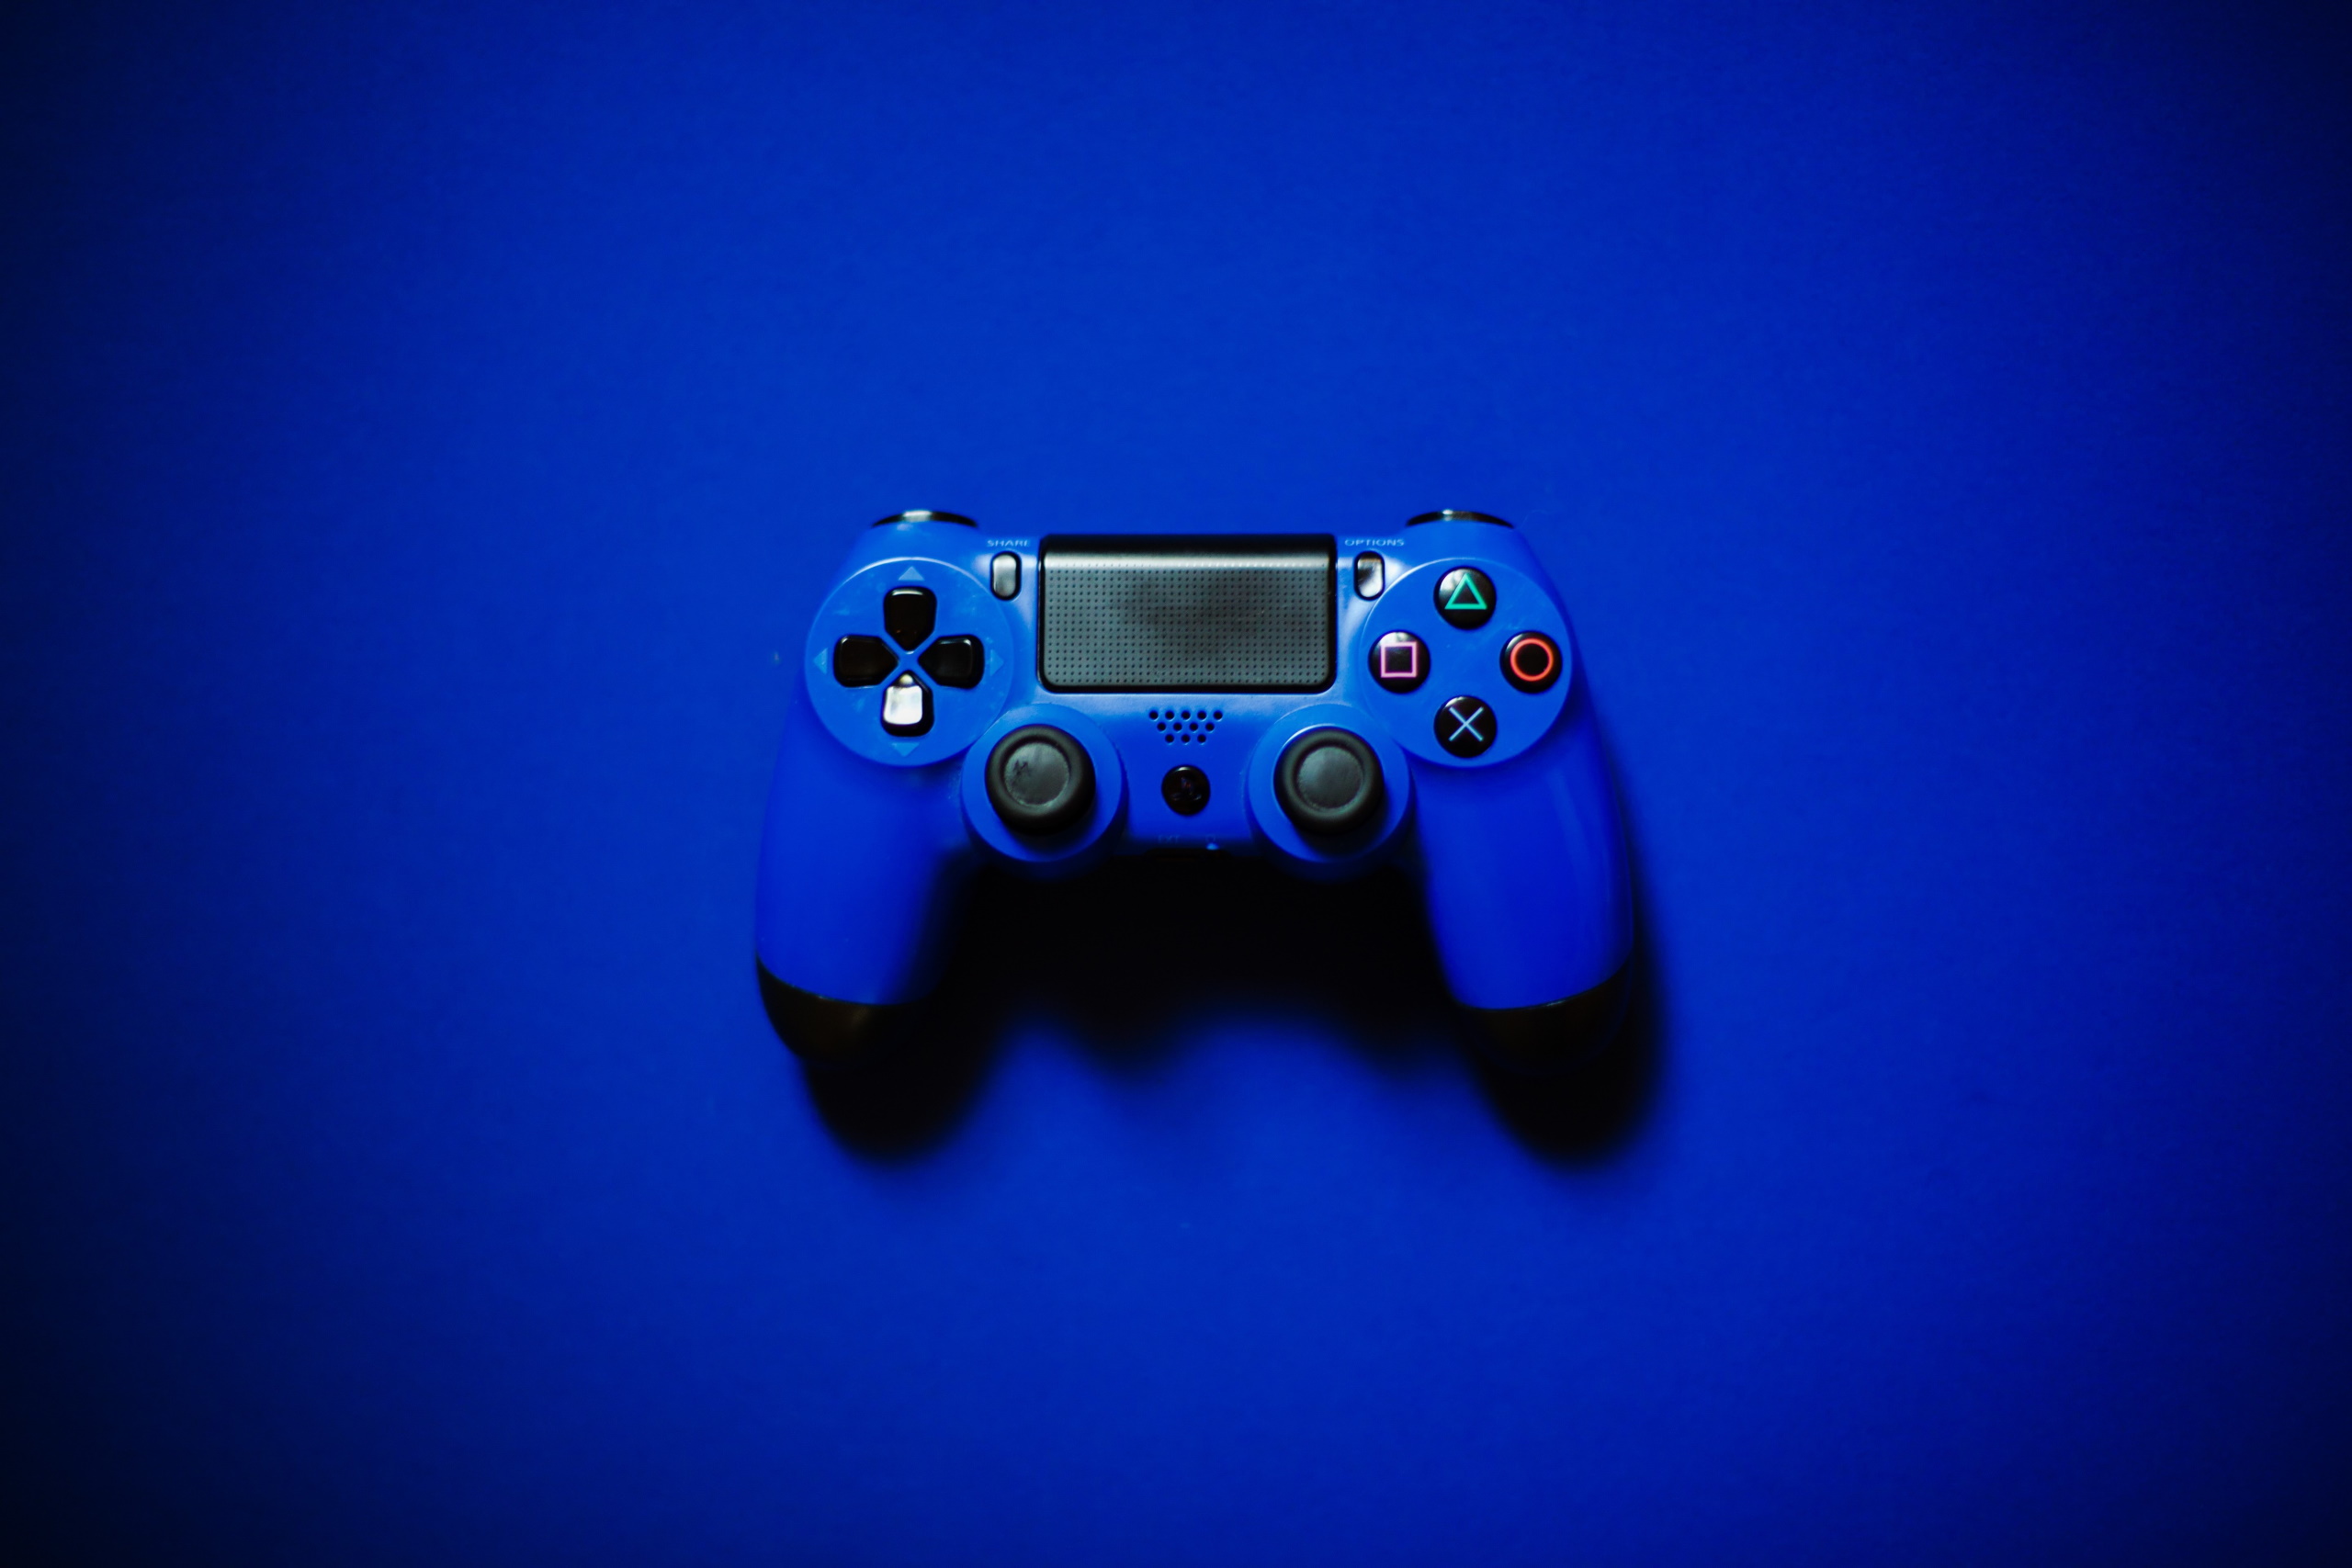 Blue PlayStation controller under blue background